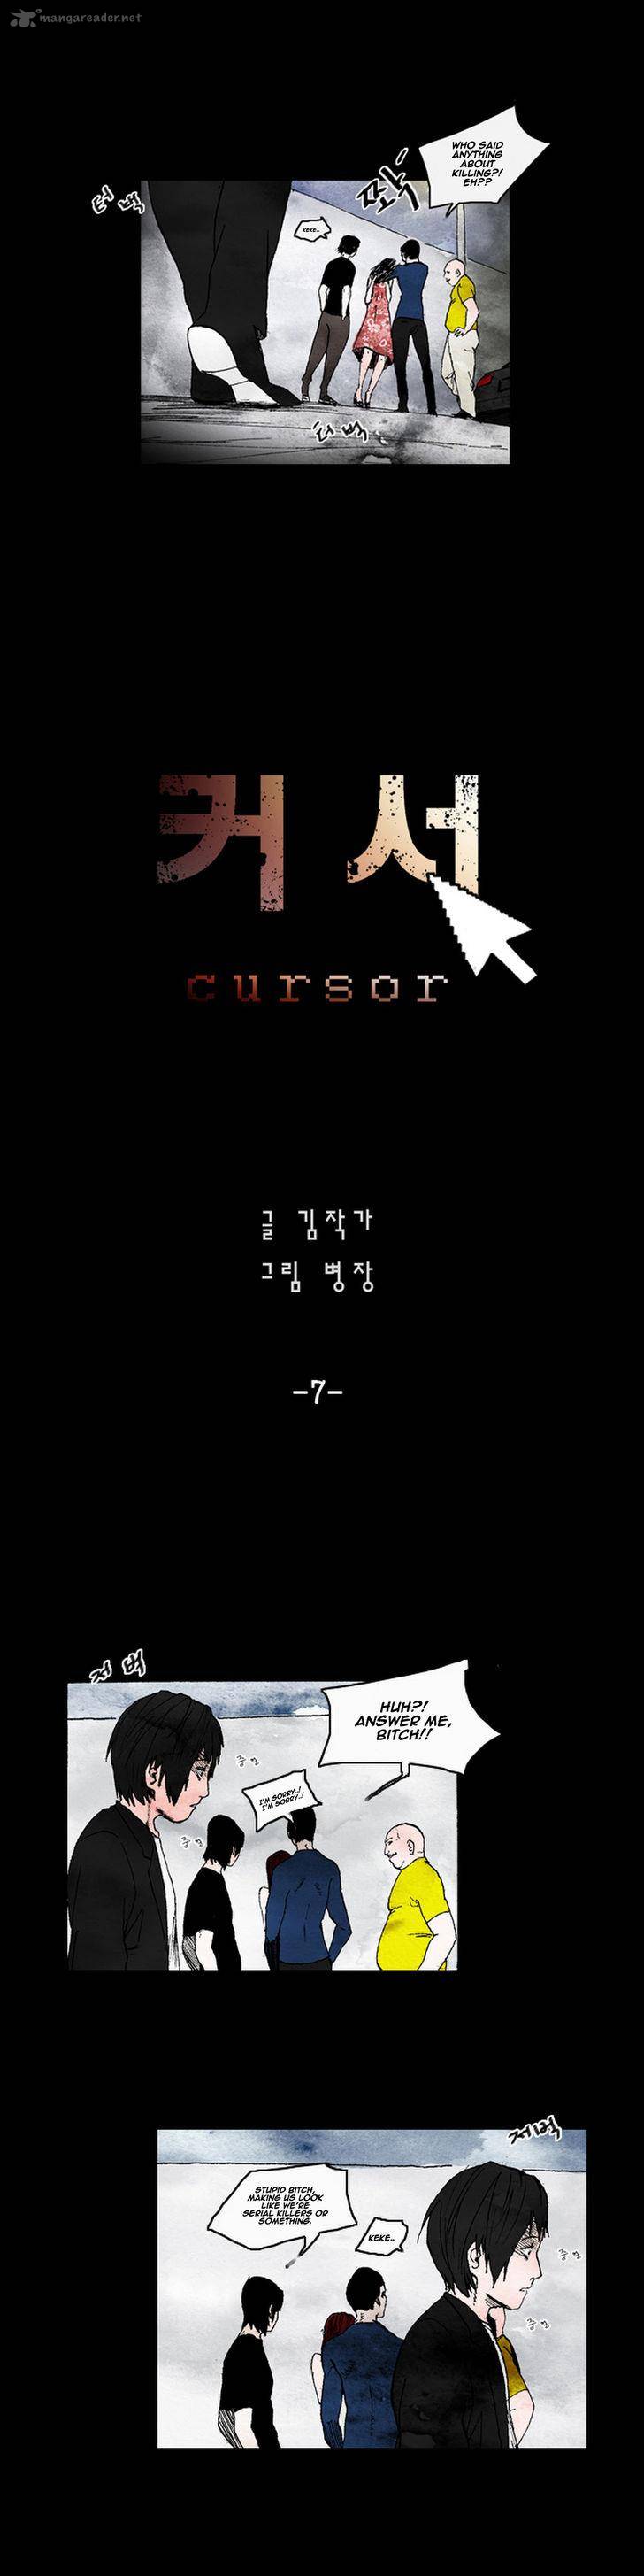 Cursor 7 2